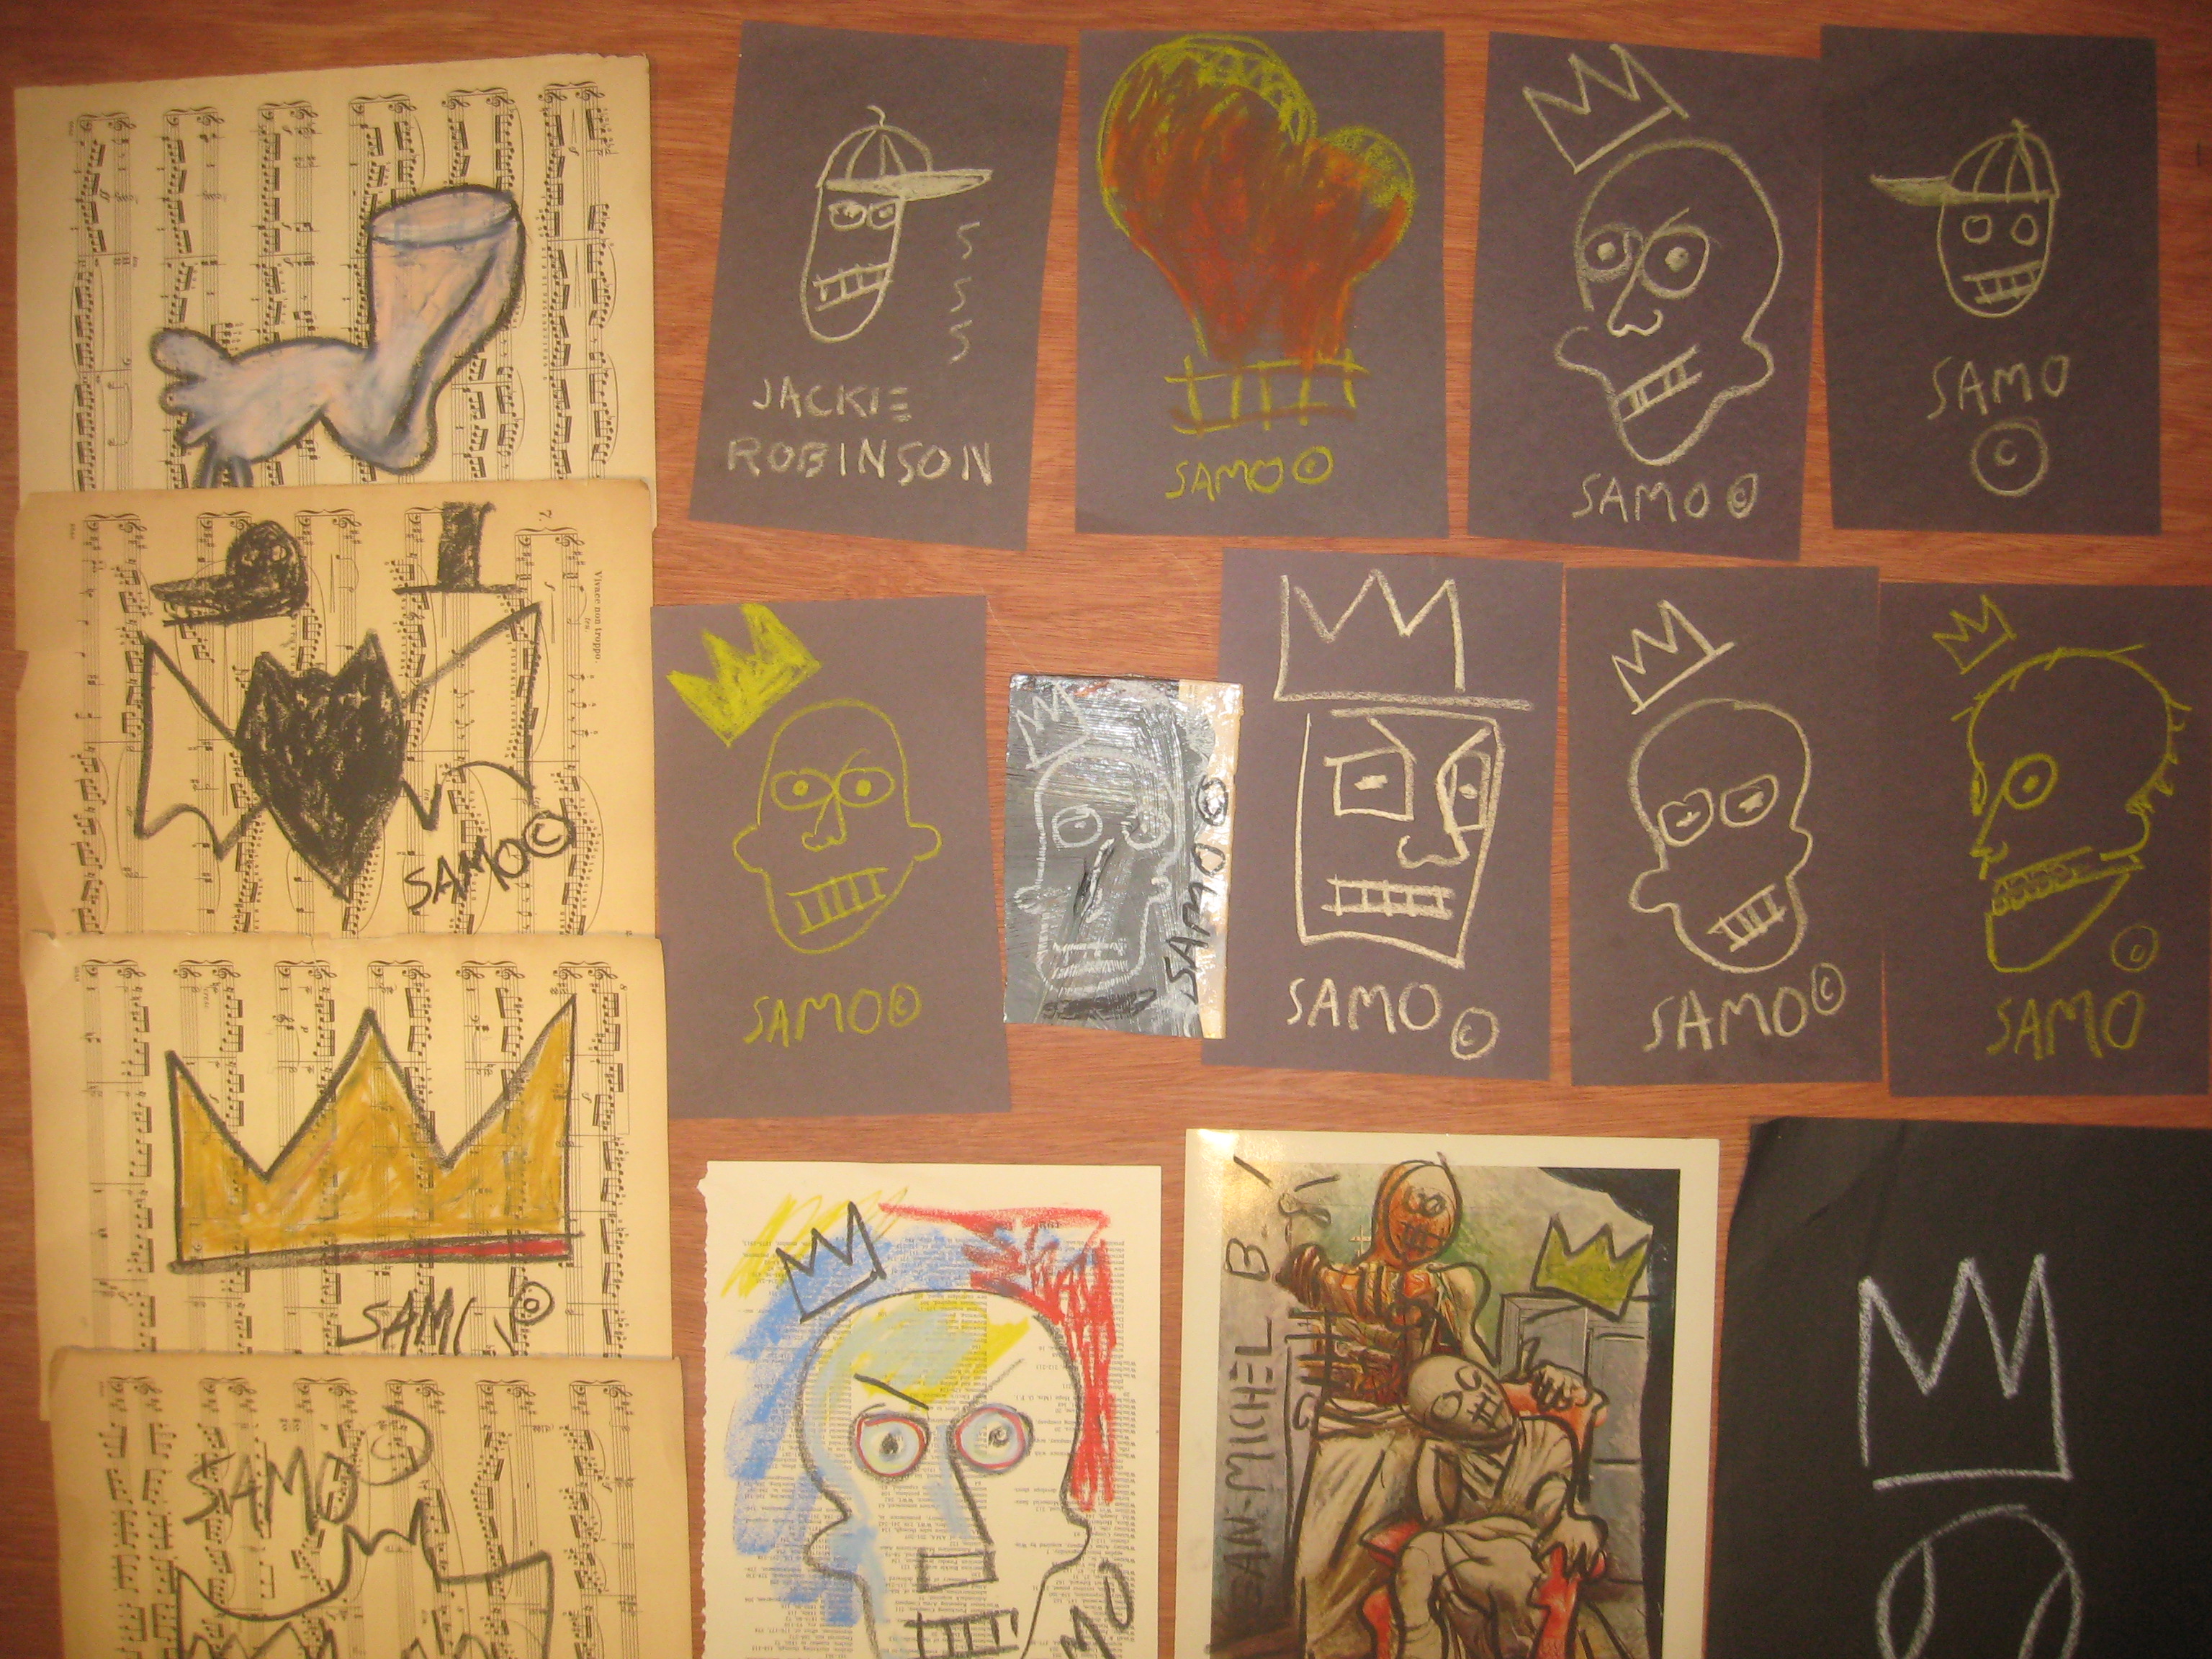 Original Basquiat artwork